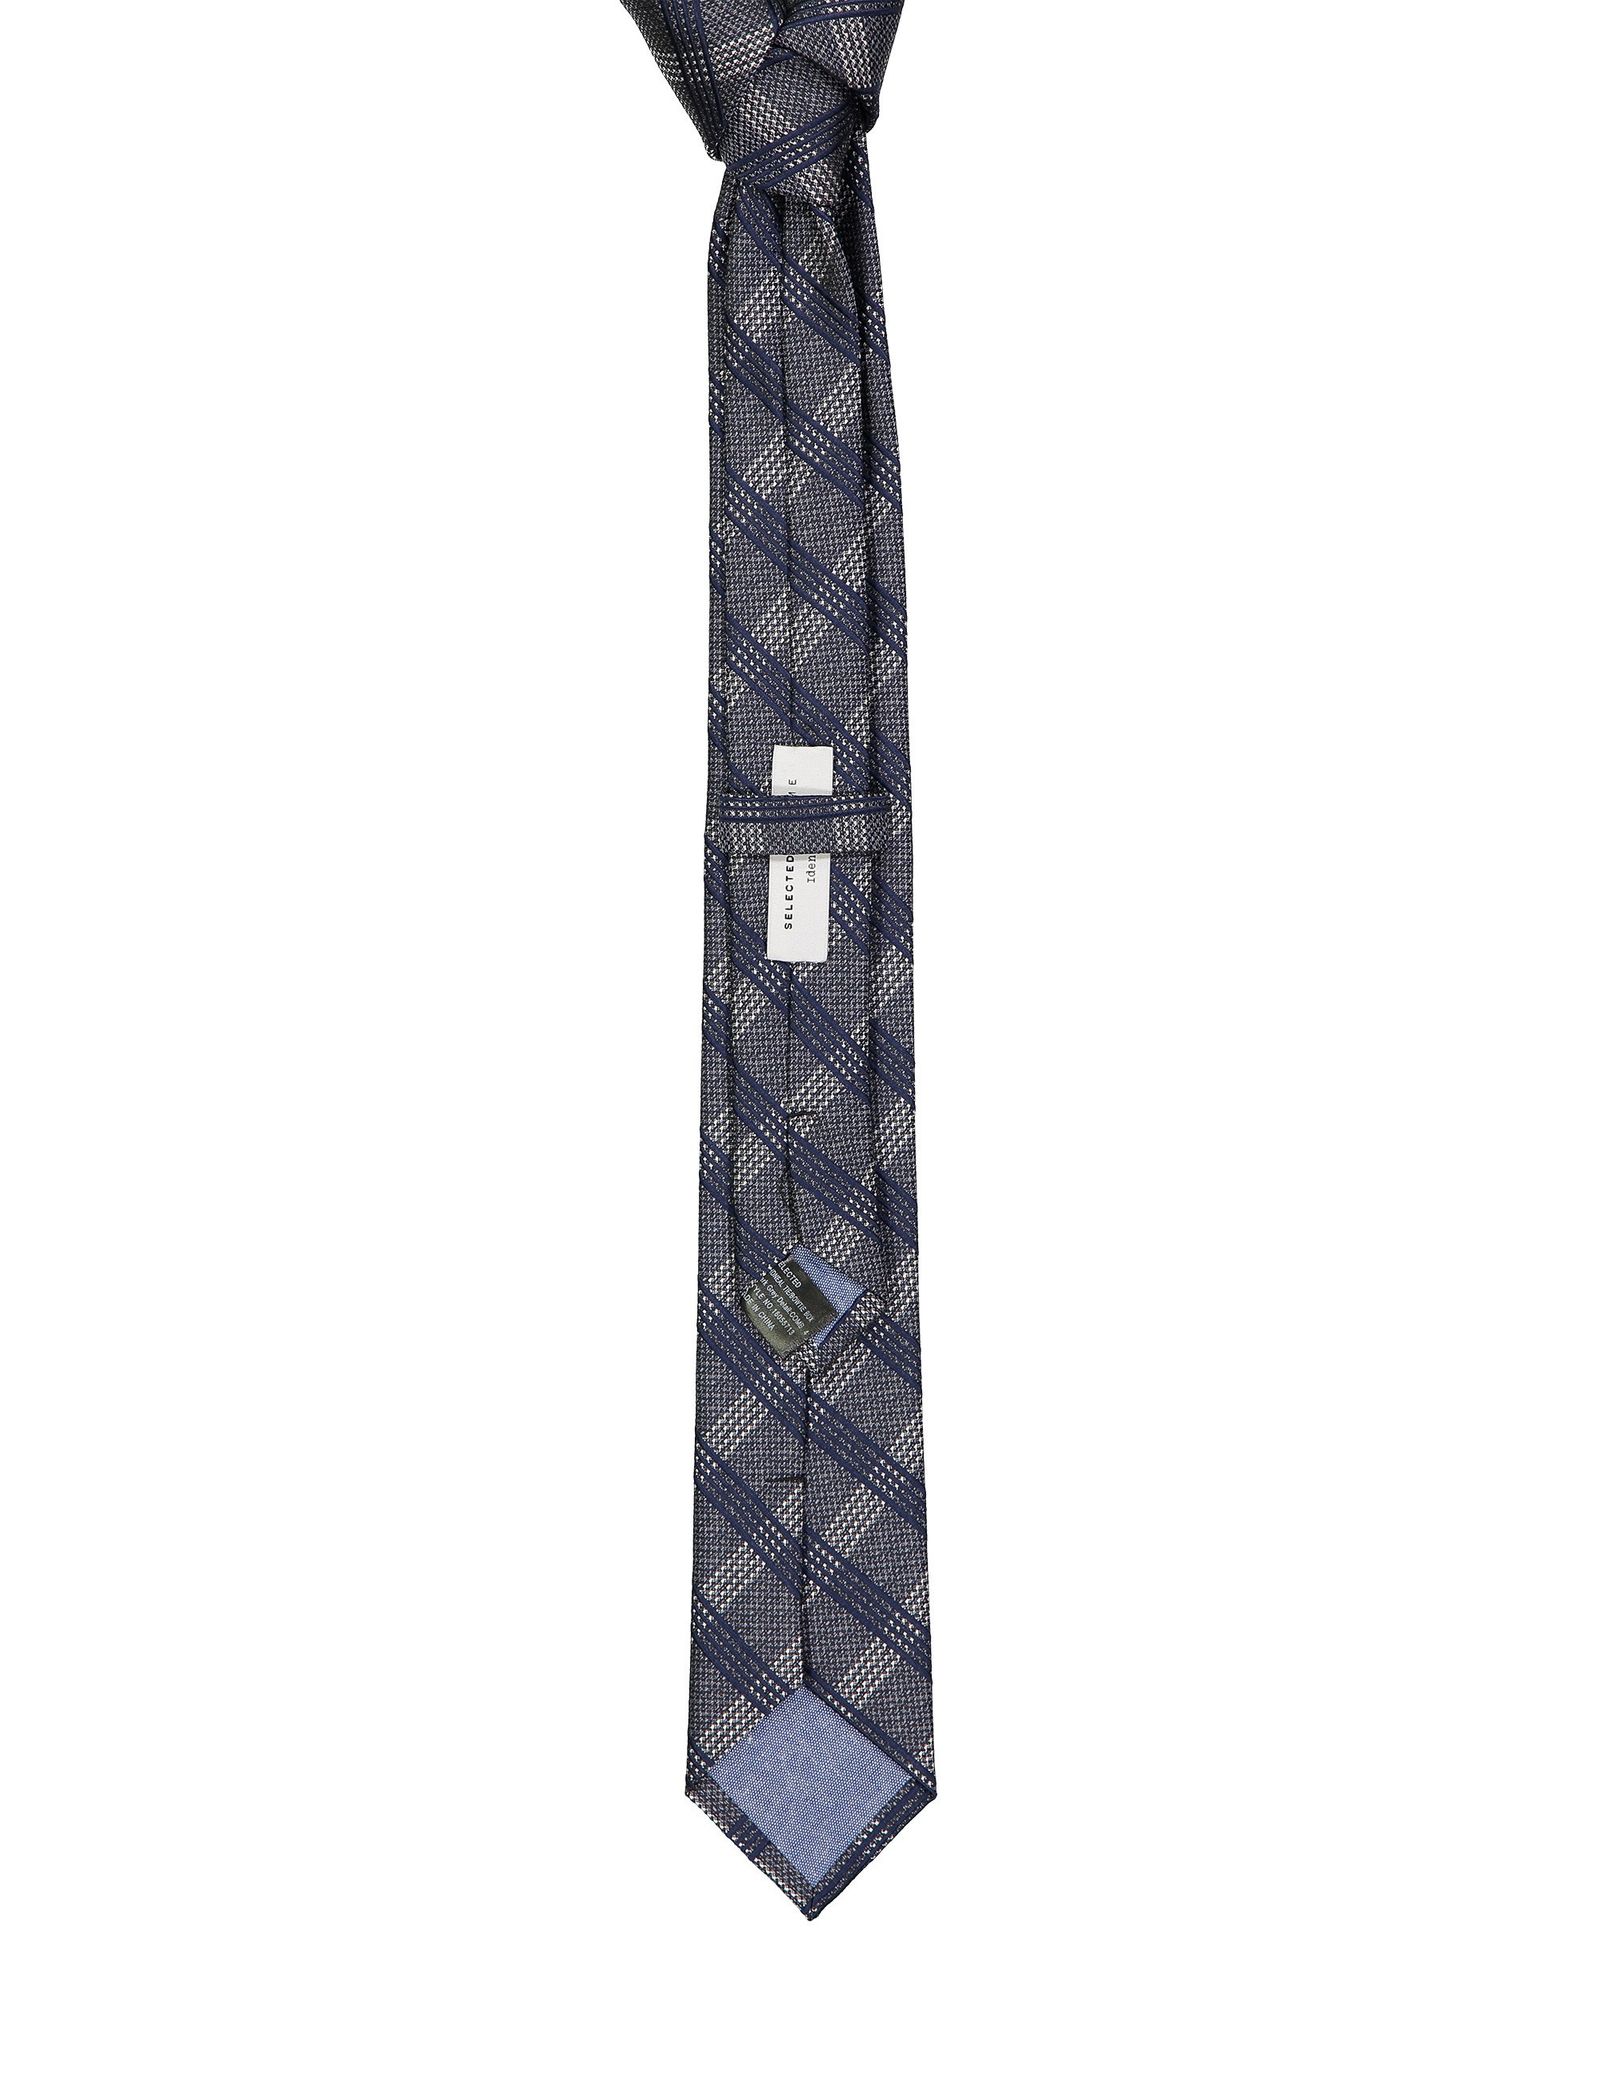 کراوات طرح دار مردانه - سلکتد - طوسي - 3